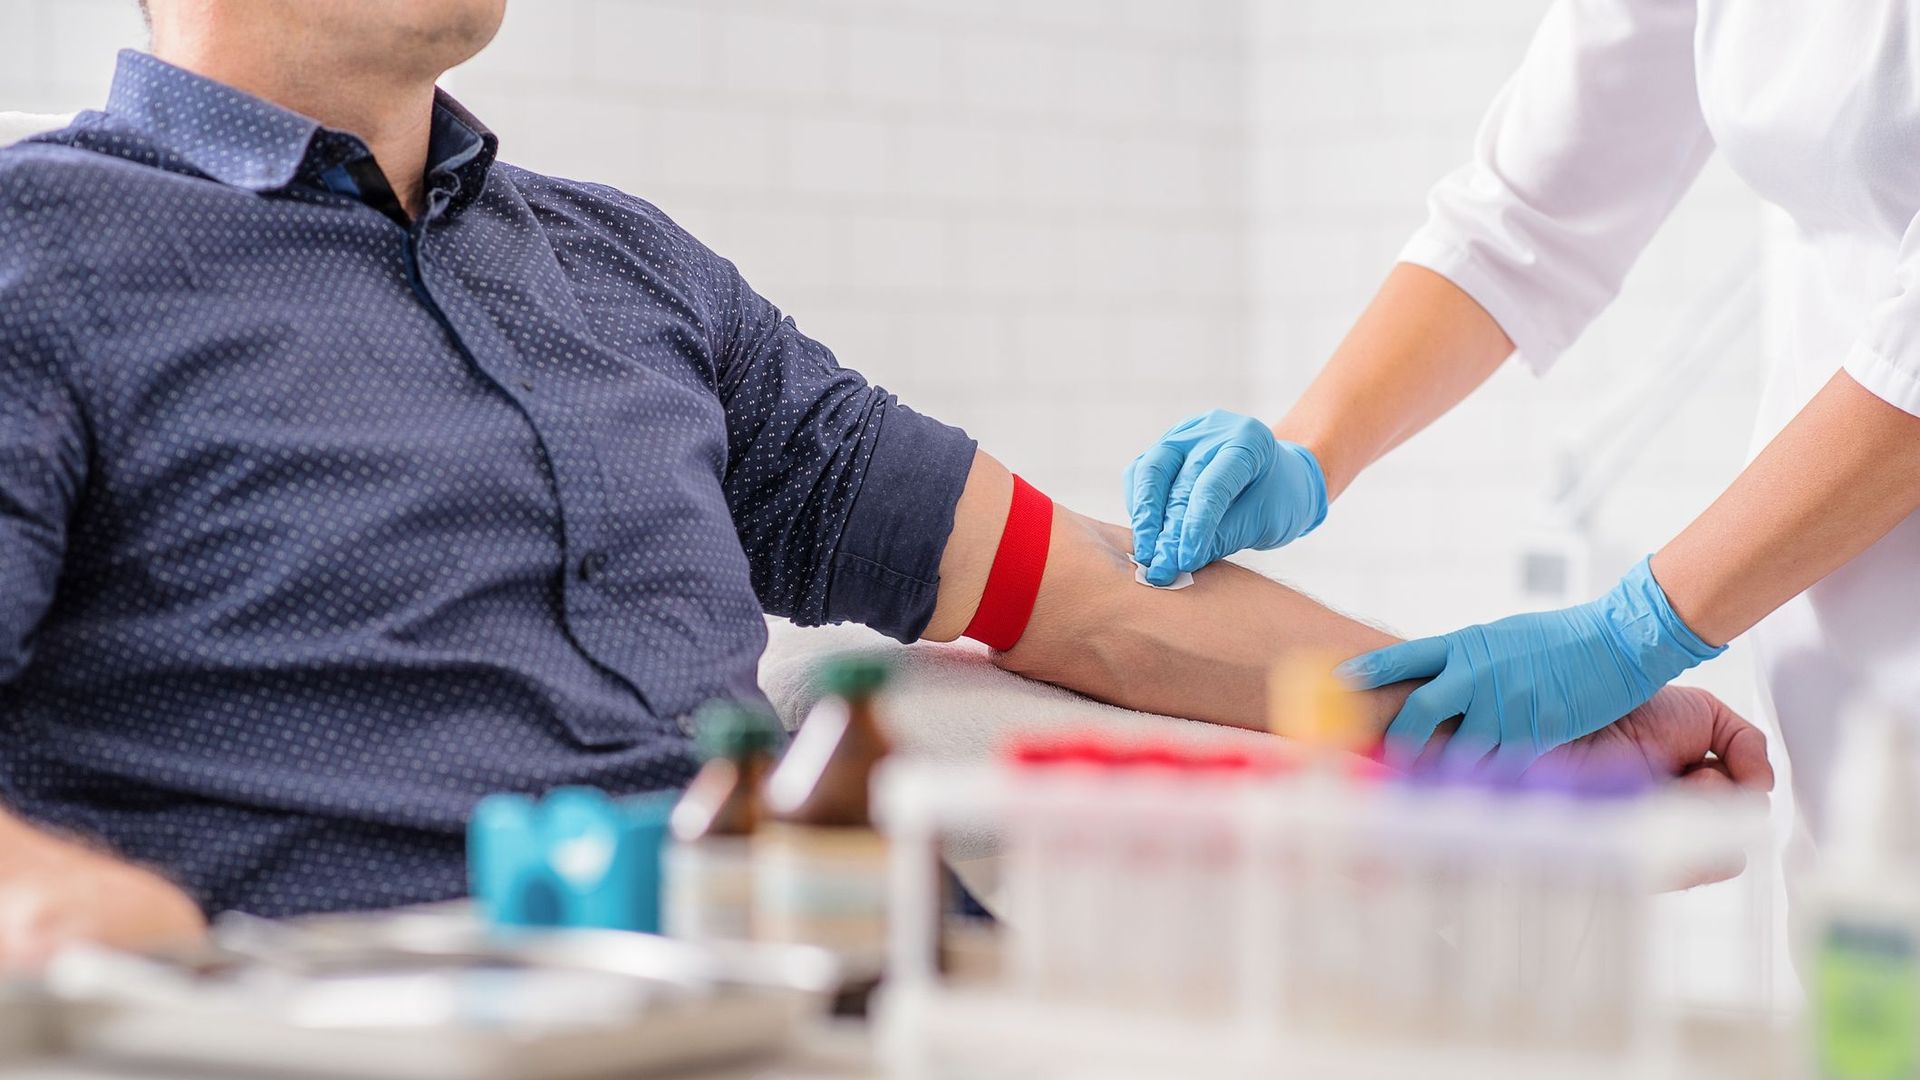 Australie: des chercheurs développent un test sanguin pour détecter le mélanome